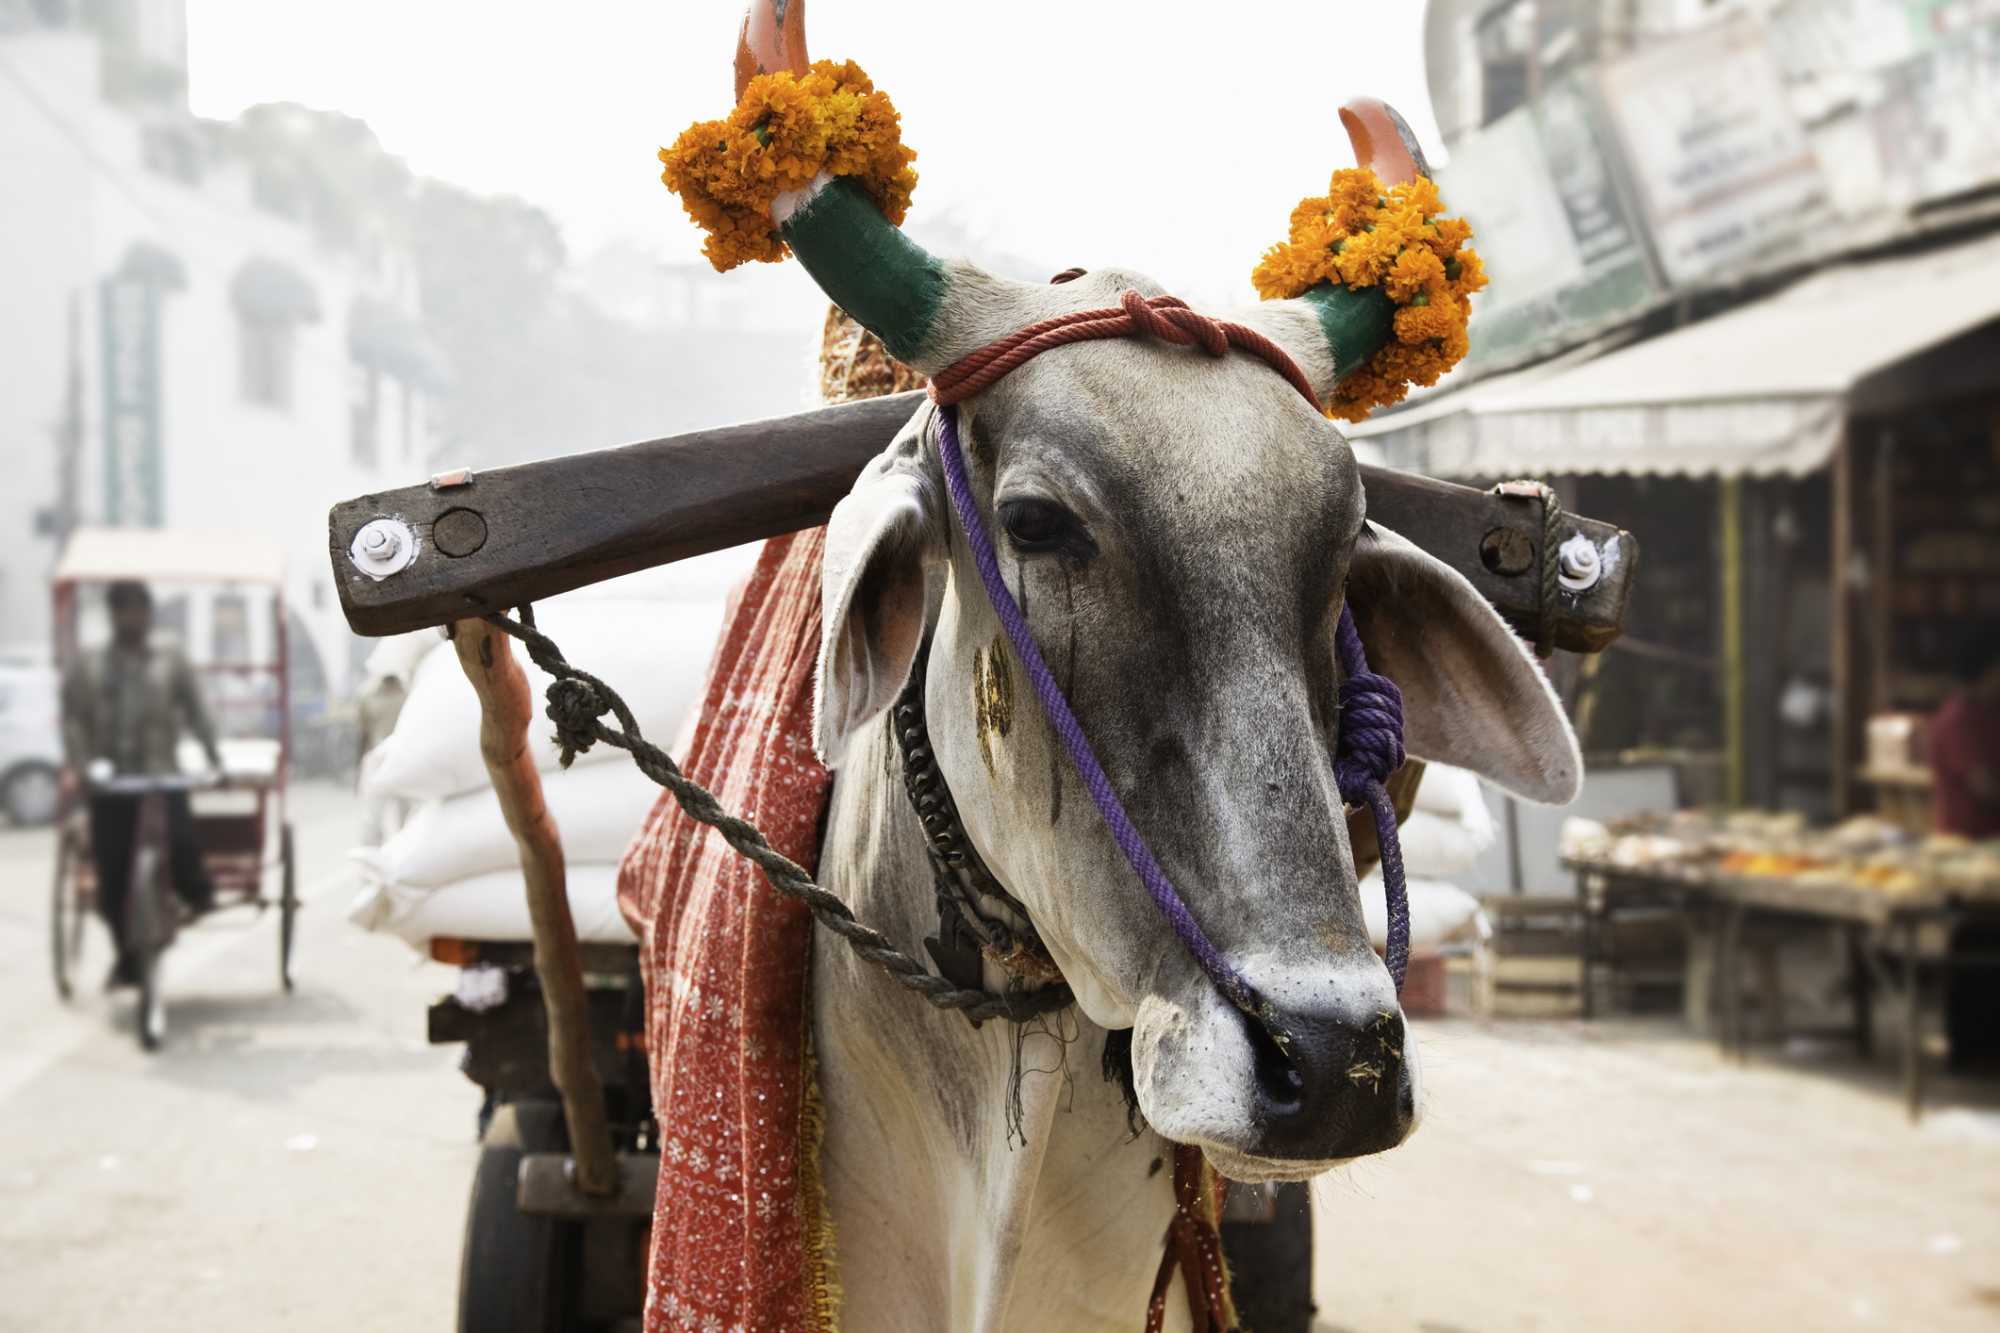 Por que a vaca é sagrada na Índia? Descubra aqui! - Blog Casa da Índia |  E-commerce especialista em produtos artesanais indianos de decoração,  roupas e cosméticos naturais.